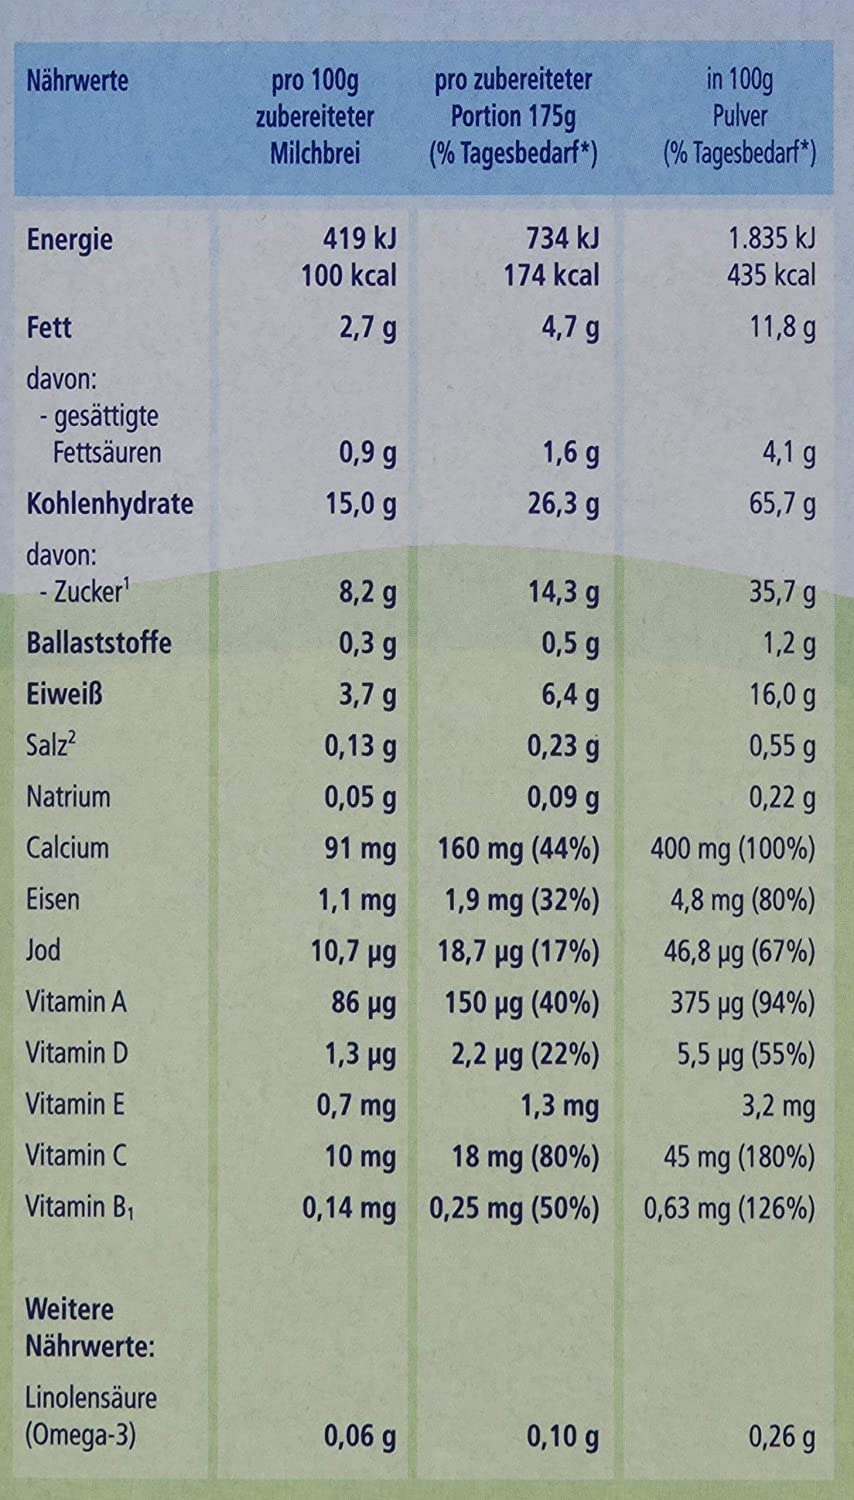 Hipp Bio-Milchbreie ohne Zuckerzusatz-Vorratspackung, ab 6. Monat, Kindergrieß, 4er Pack (4 x 450 g)